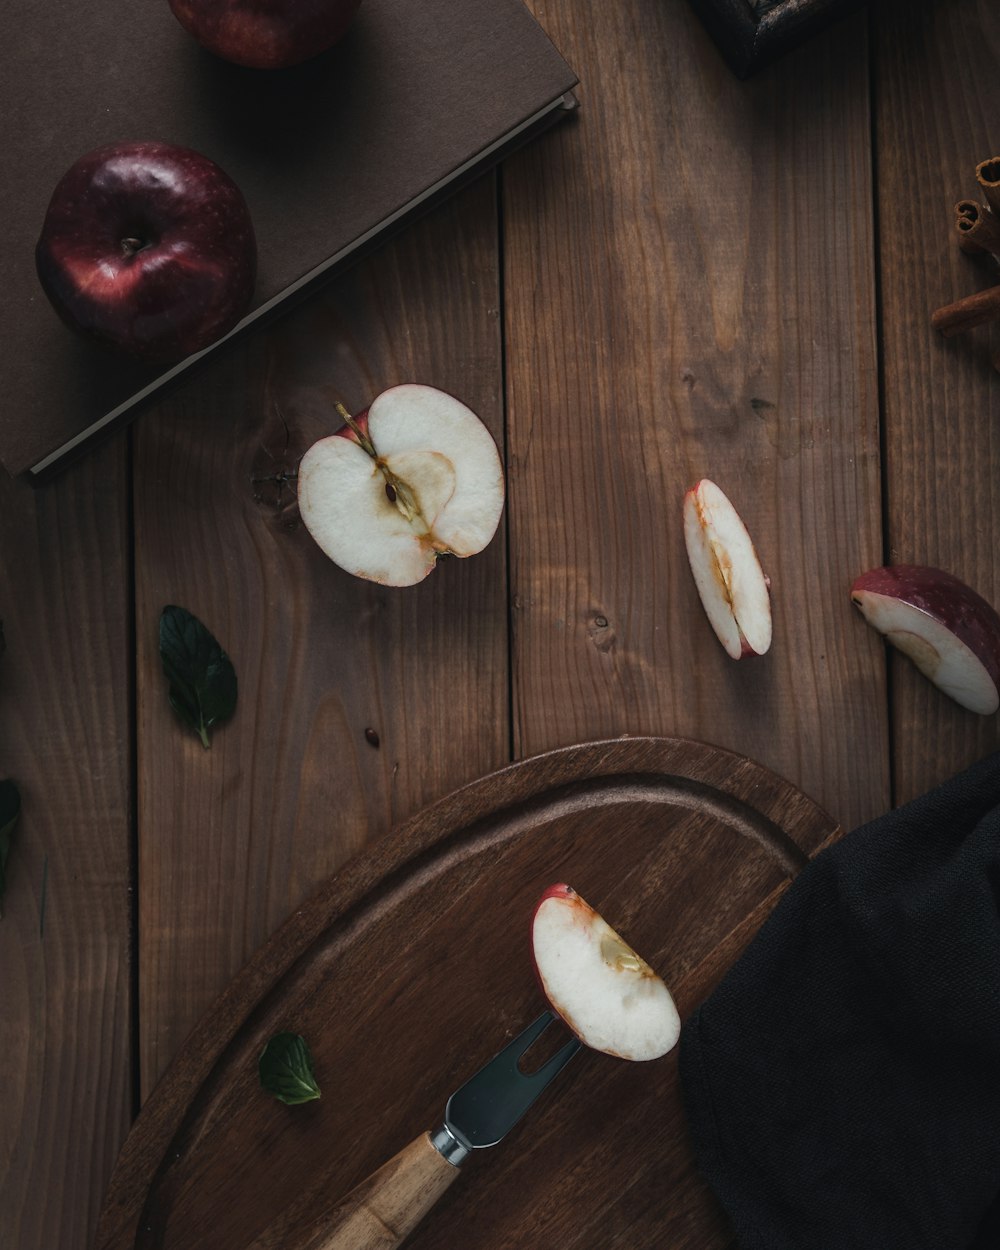 sliced apple fruit beside cutting board